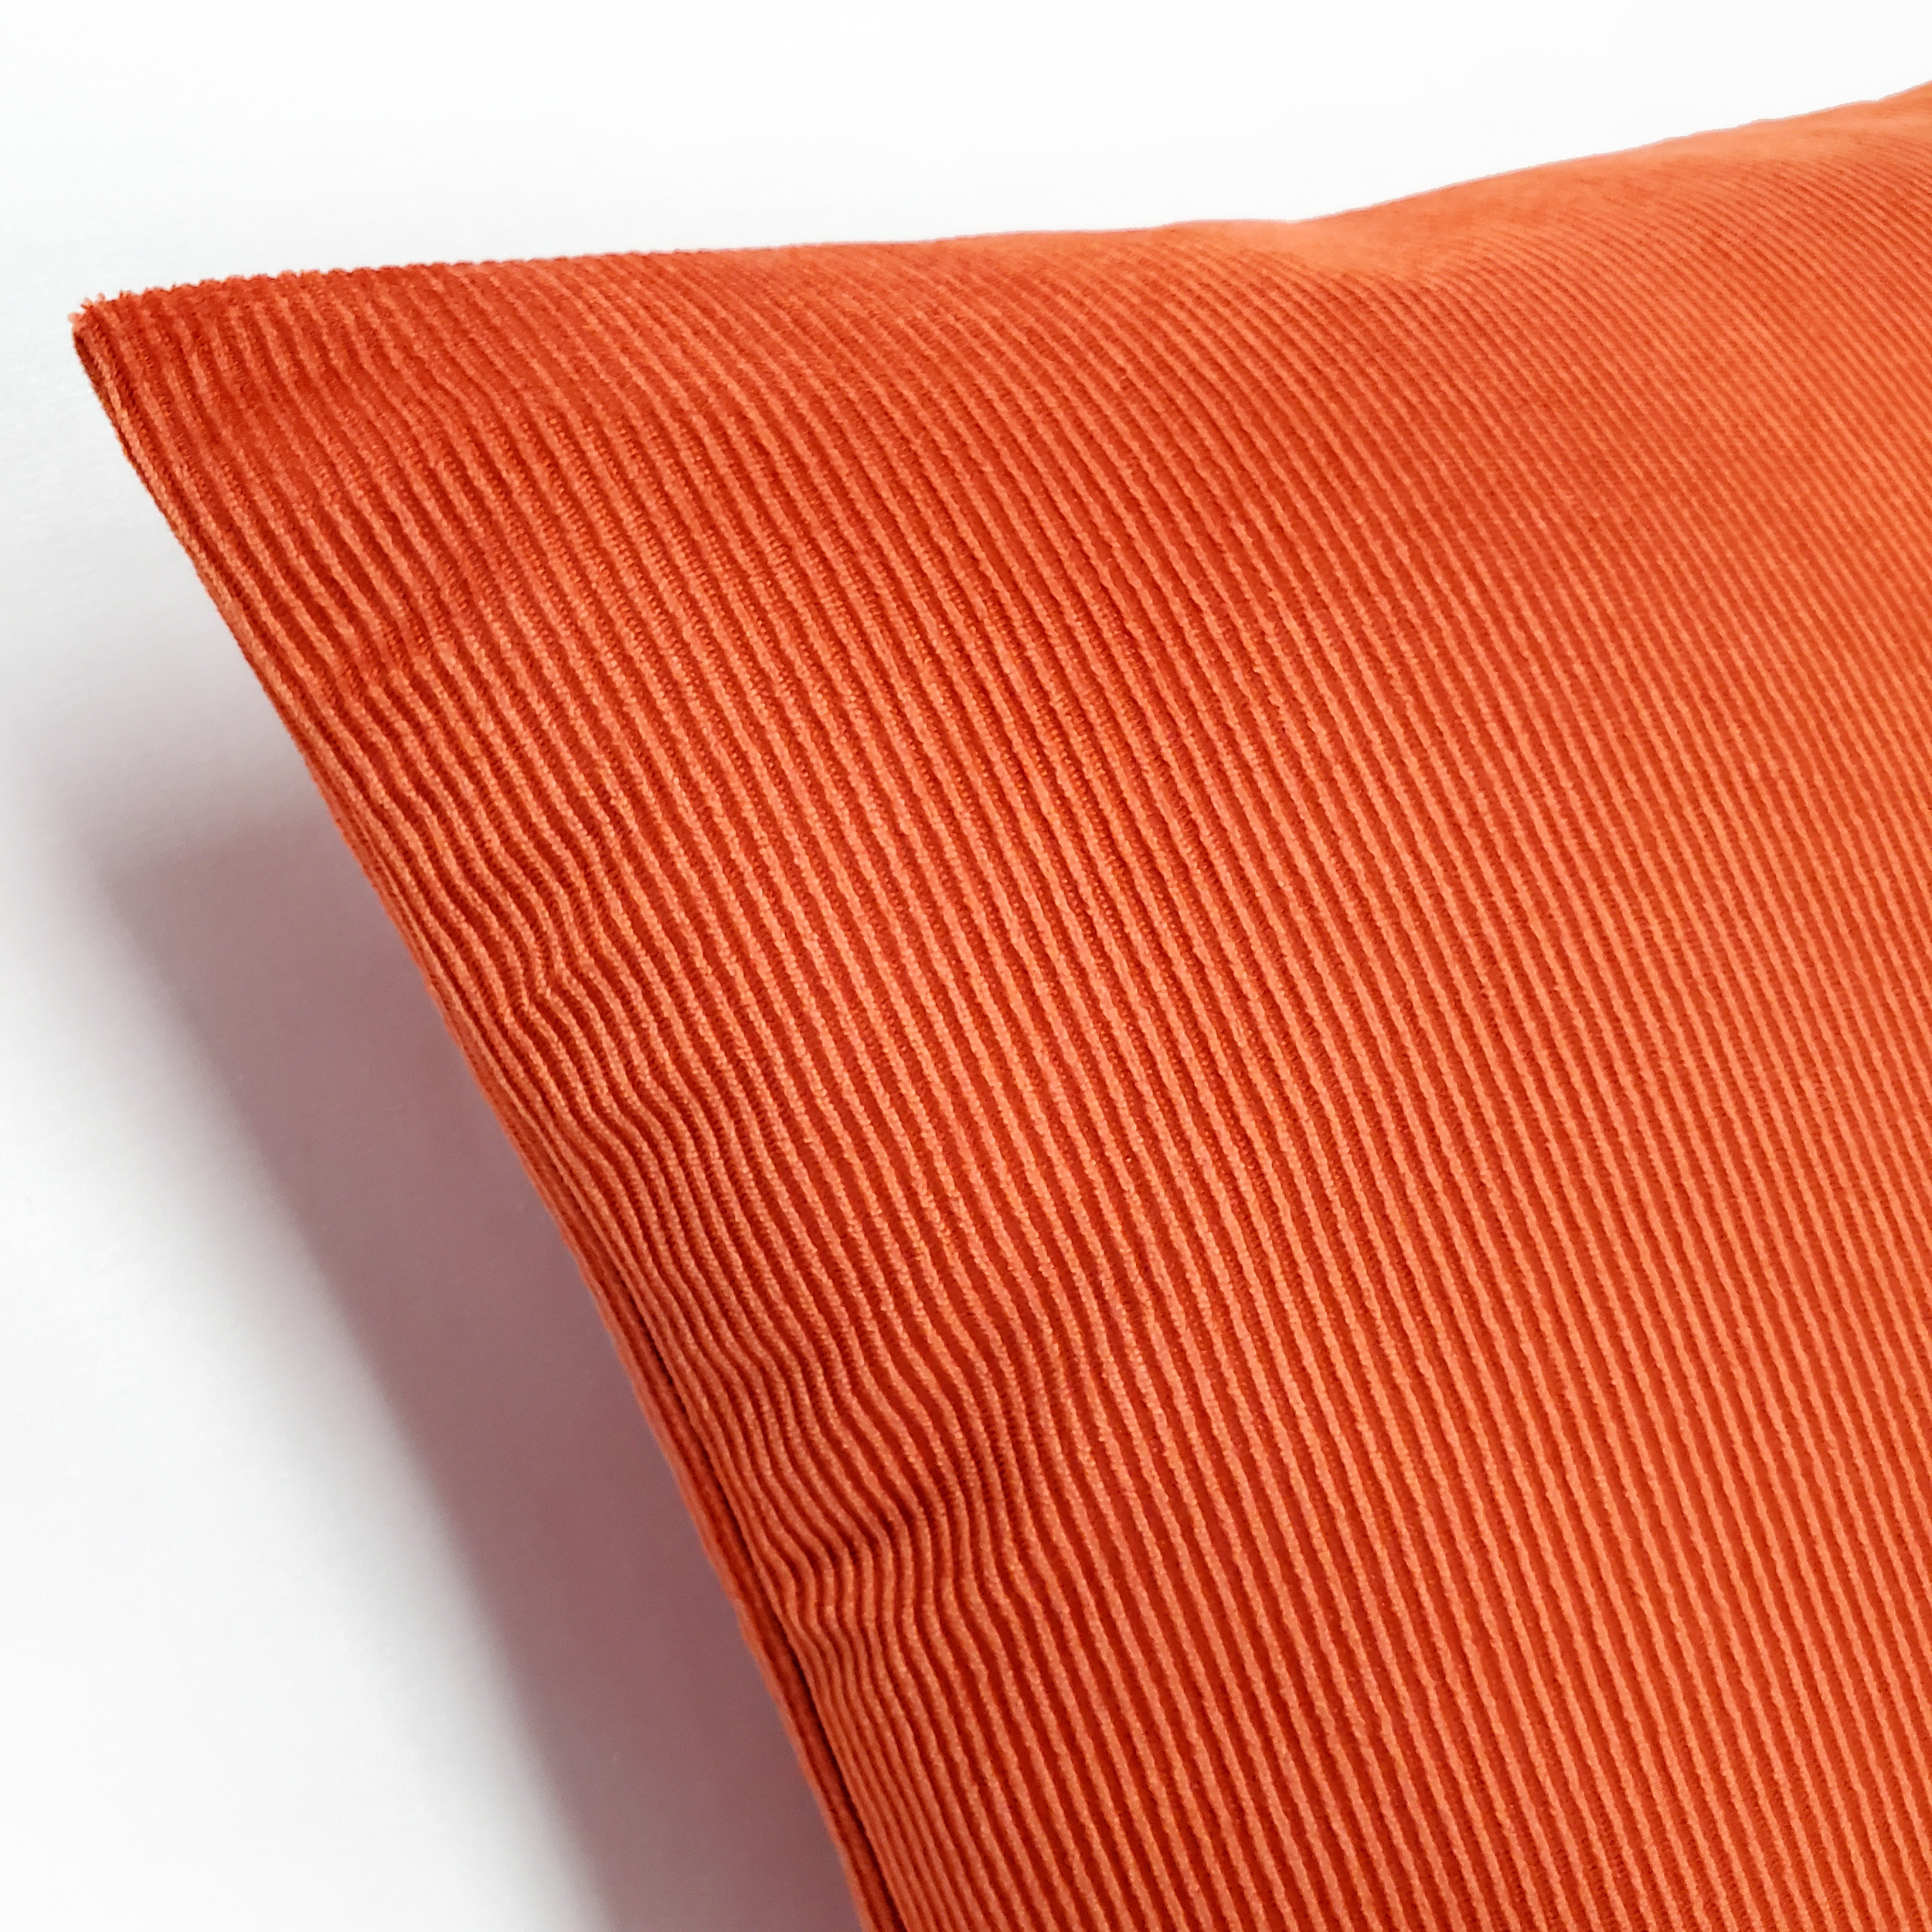 Liminal Koi Orange Striped Velvet Throw Pillow 12x19, With Polyfill Insert